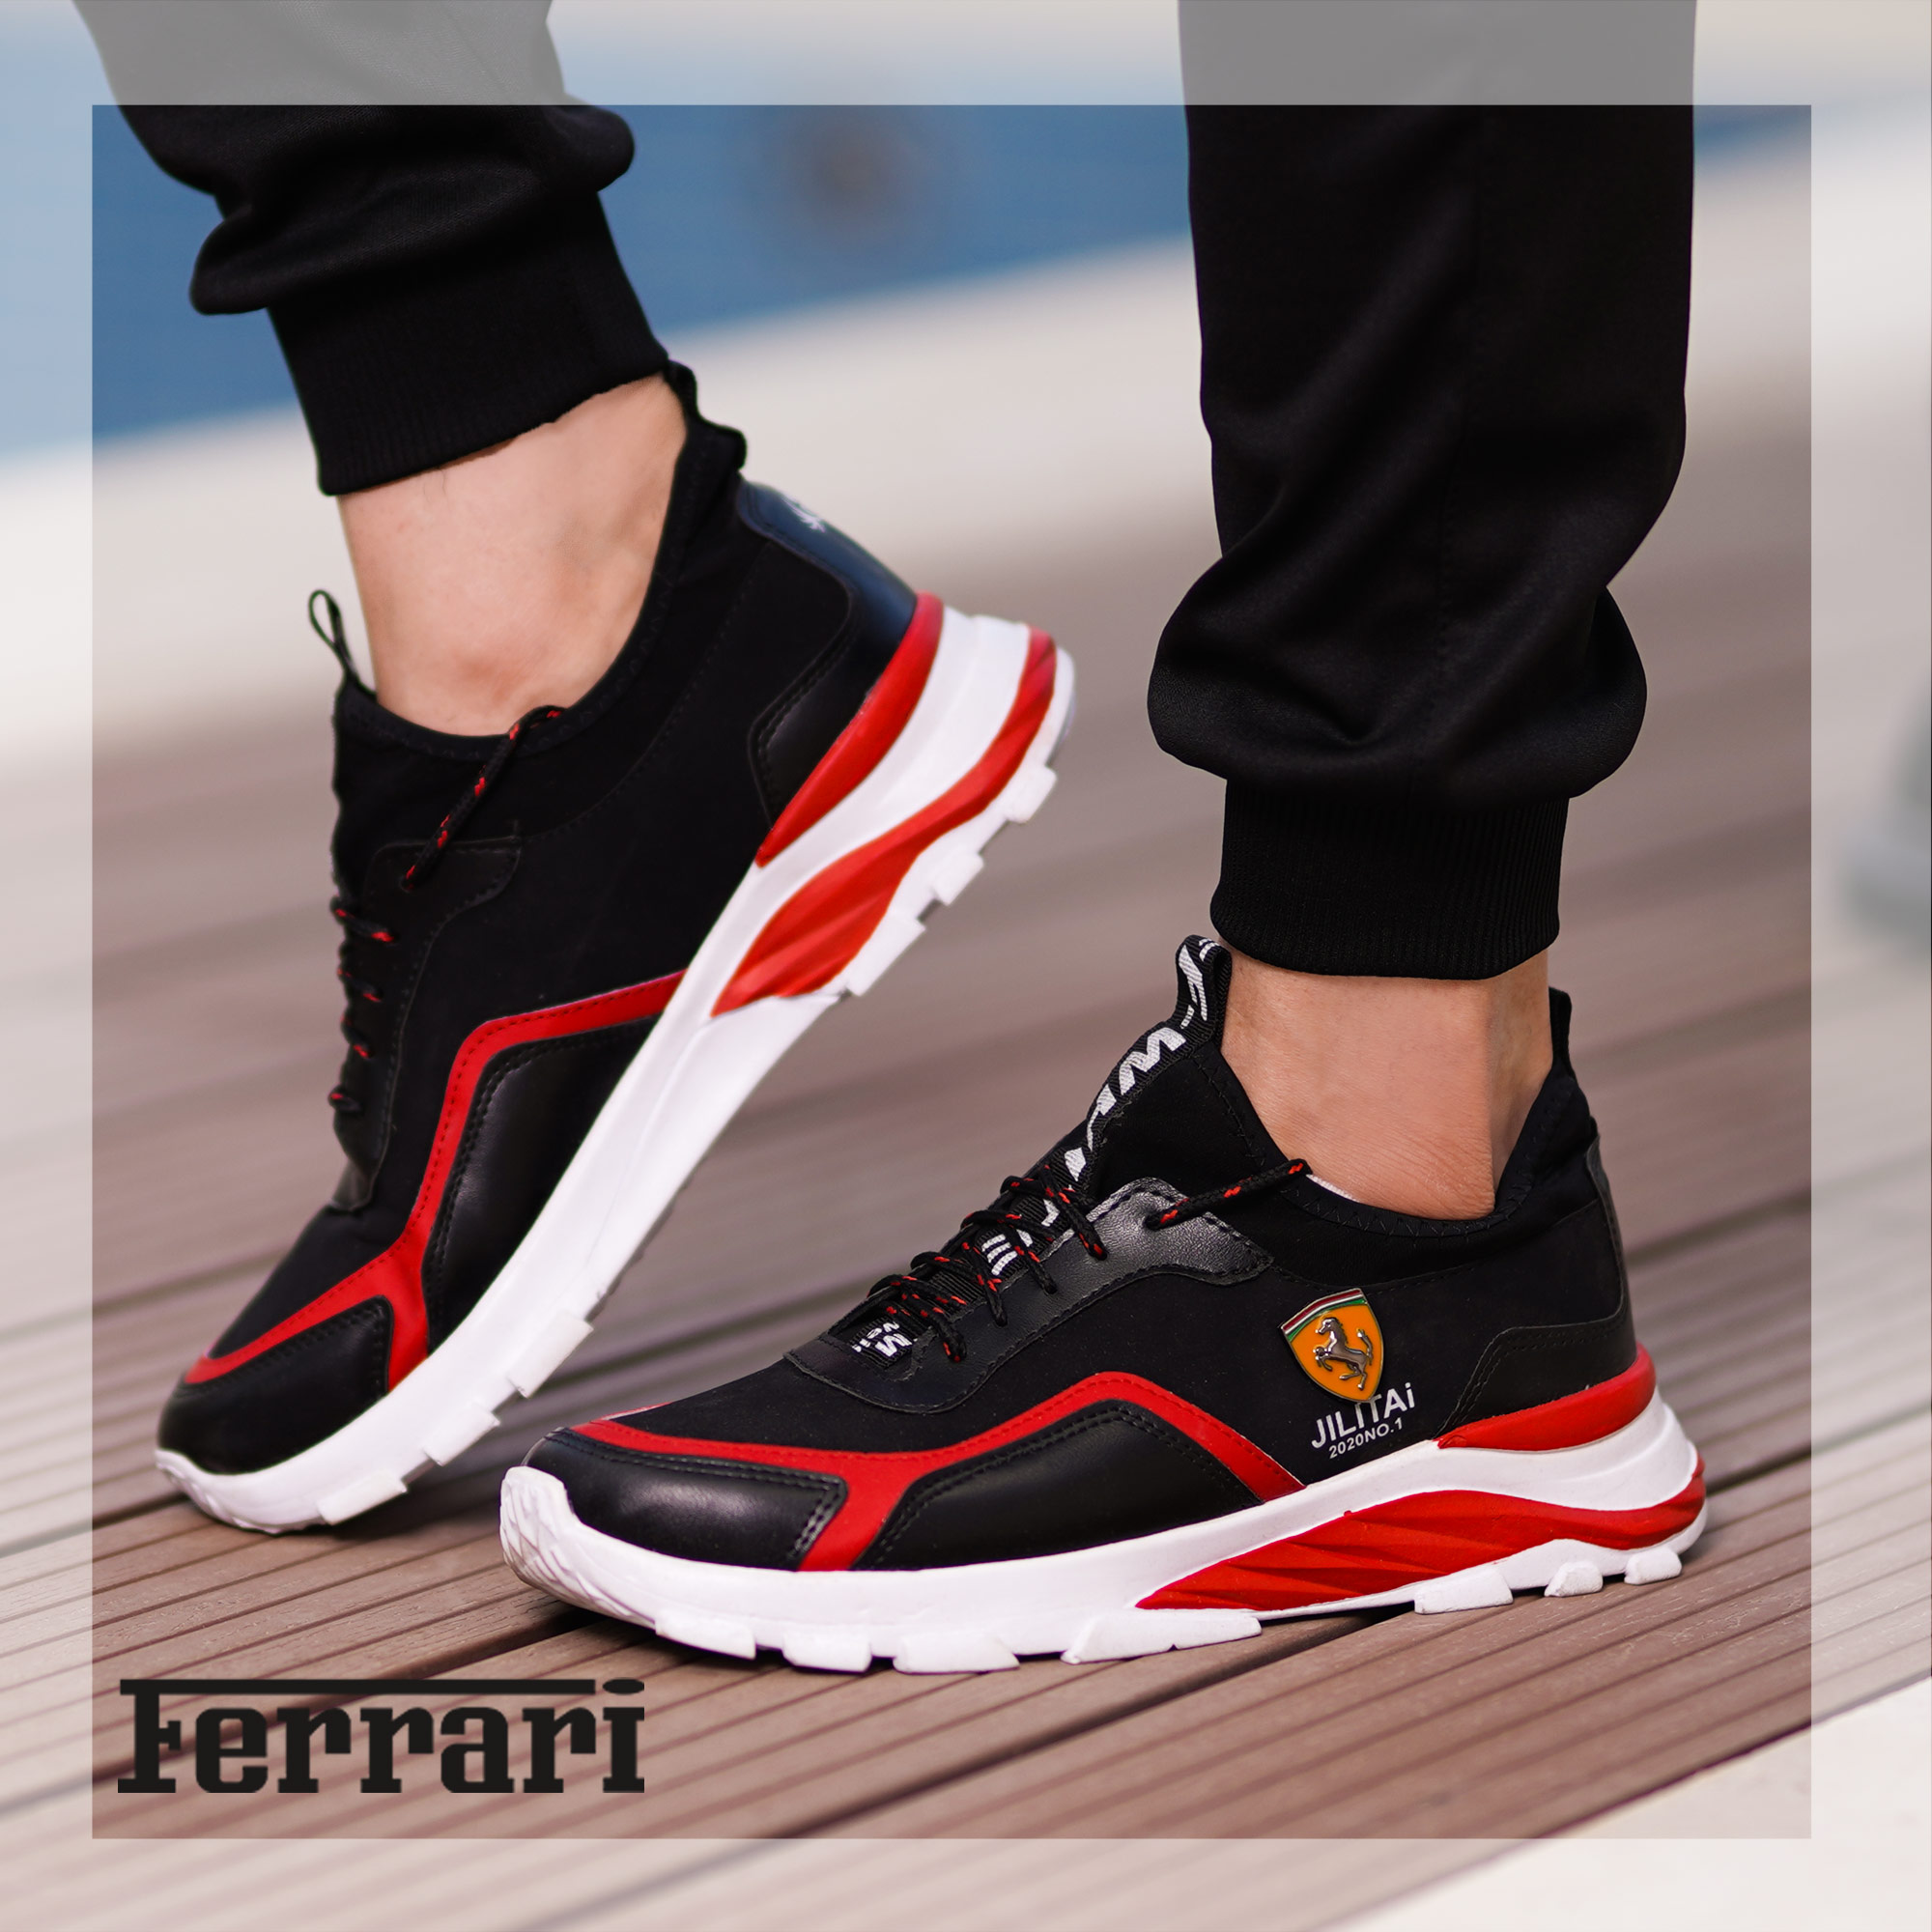 کفش مردانه Ferrari مدل JILITAi(مشکی و قرمز)